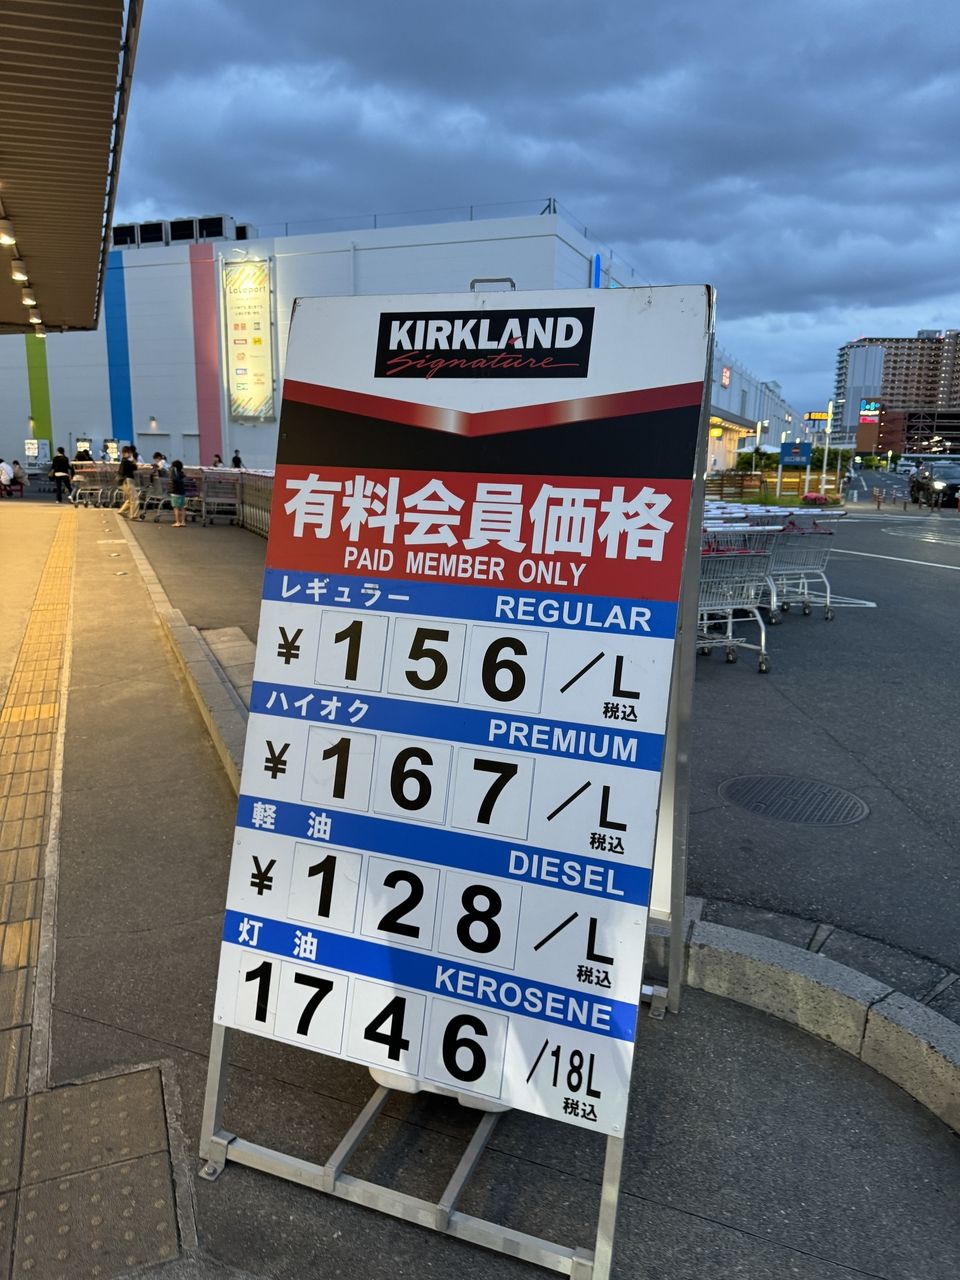 ここのところ、ガソリン価格が高いですね。会社の所在地である埼玉県越谷市は東京近郊の住宅地であるせいか、比較的全国でもガソリンが安く入れられる場所でもあります。その地域近隣でほぼ底値なのが、新三郷のコストコにあるコストコガスステーションです。